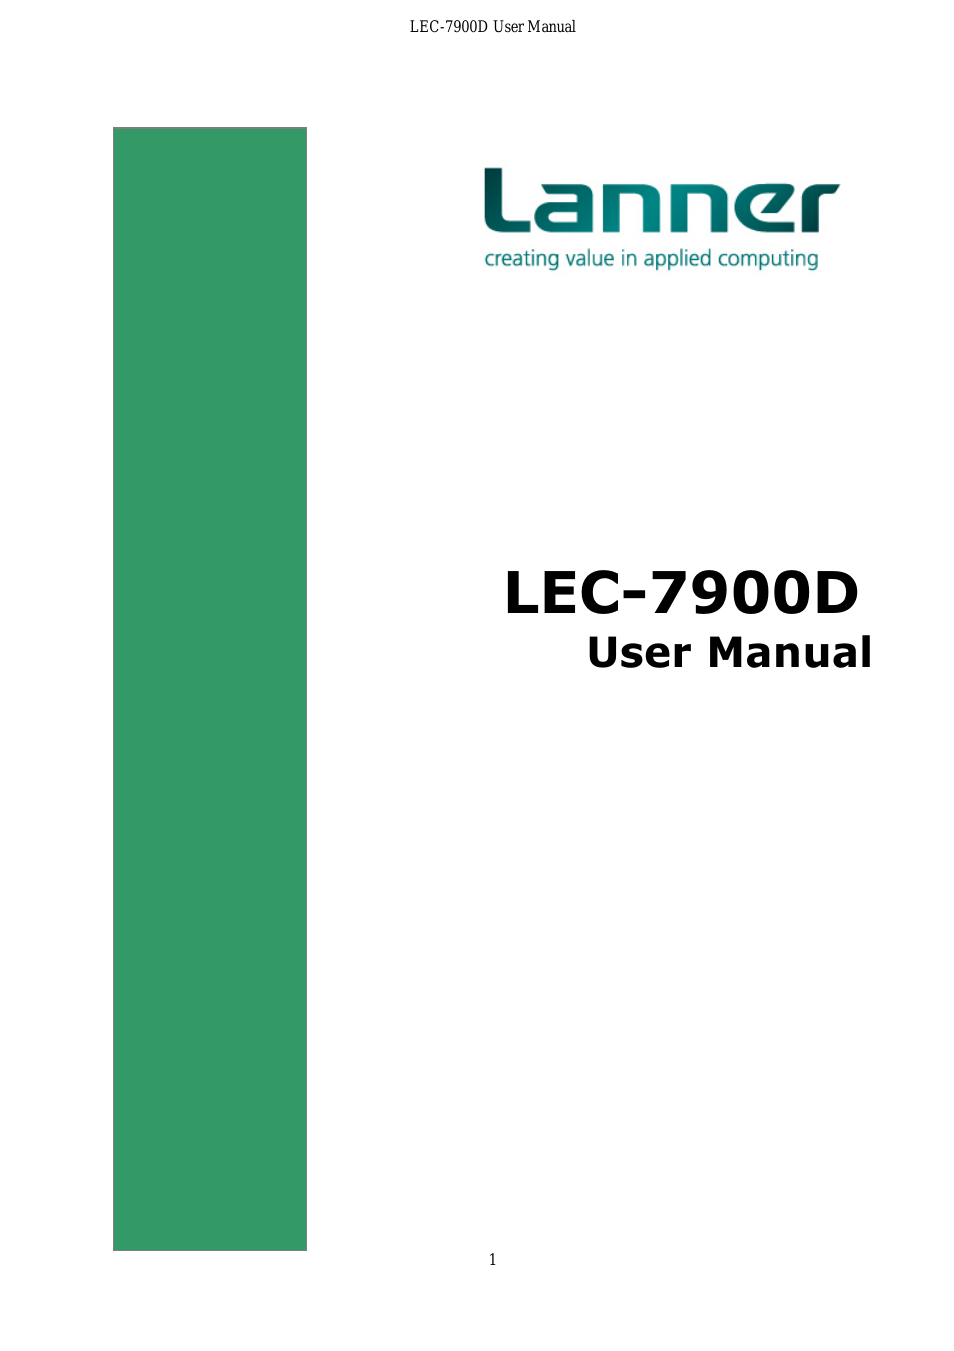 LEC-7900